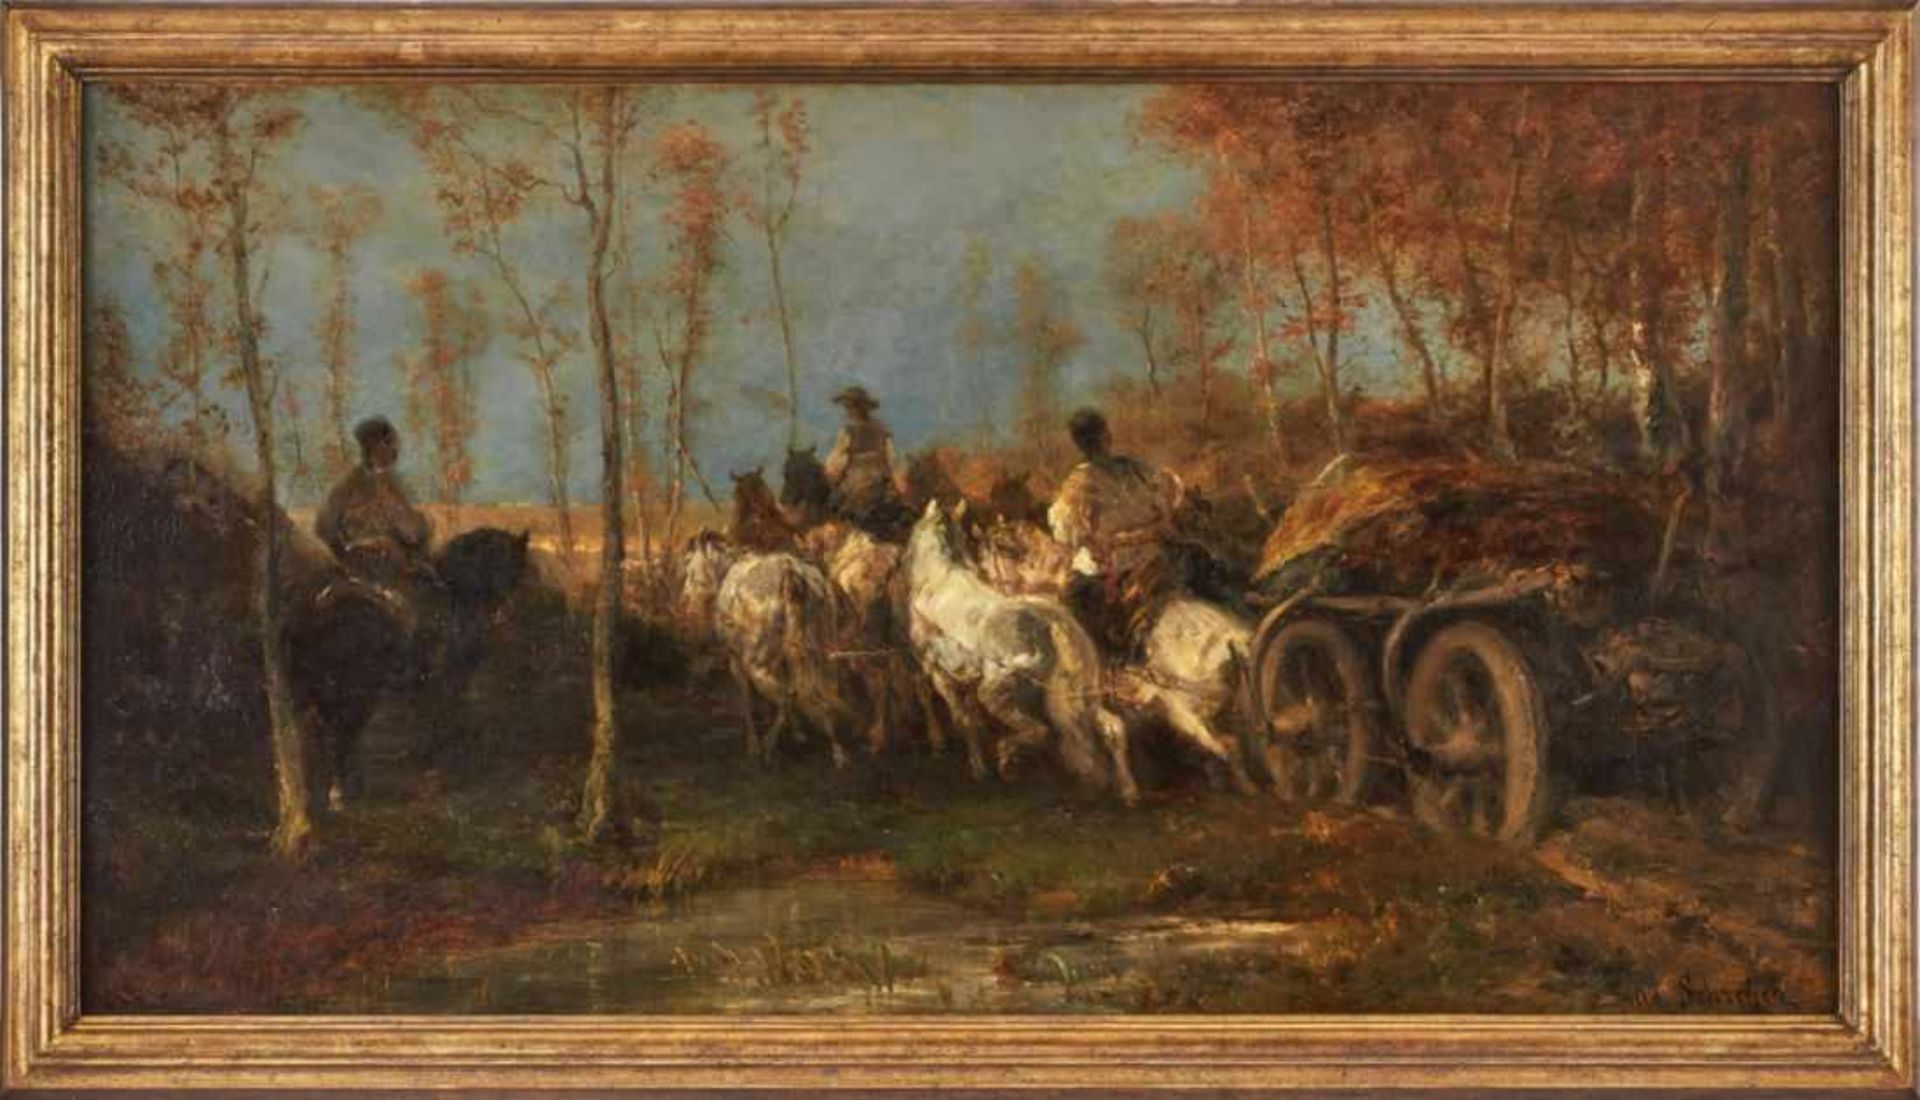 Gemälde Adolf Schreyer1828 Frankfurt - 1899 Kronberg "Heimkehrender Panjewagen" u. re. sign. Ad.